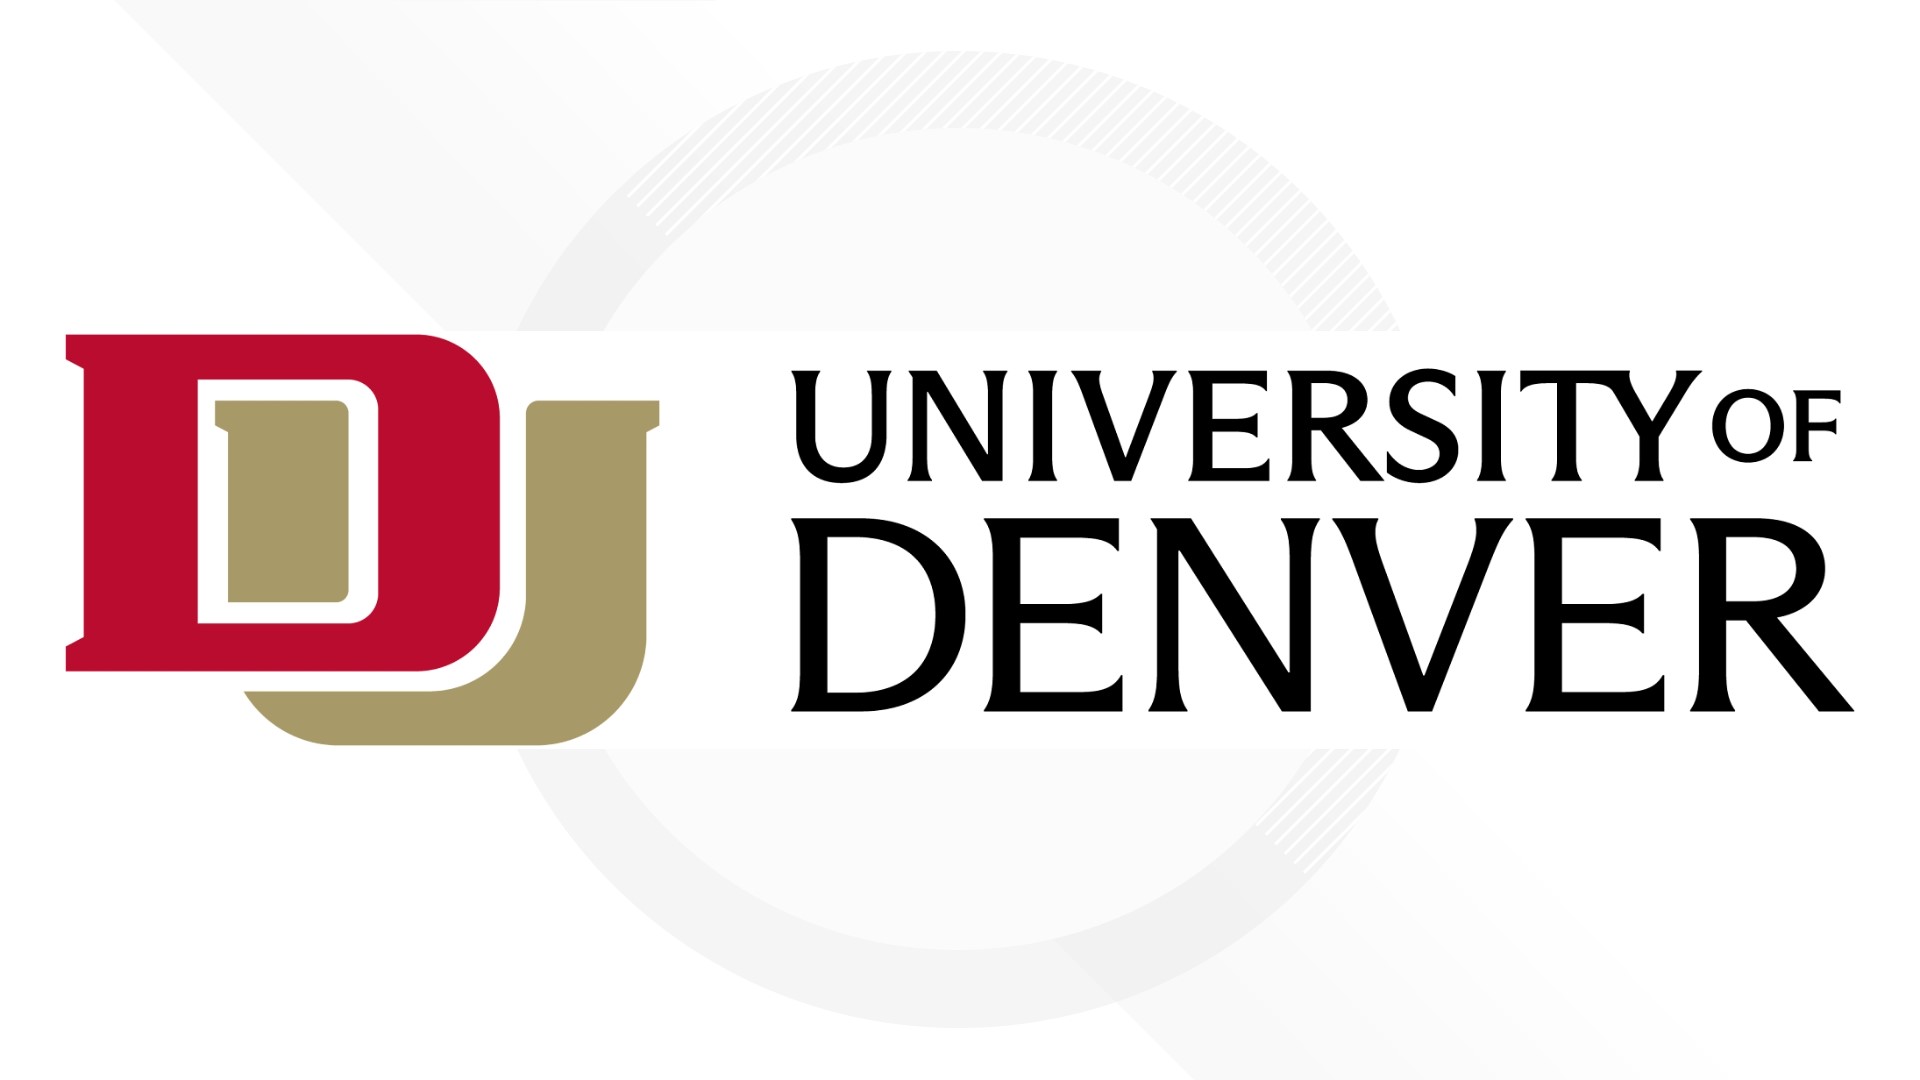 university-of-denver-has-a-new-du-logo-refreshed-brand-9news